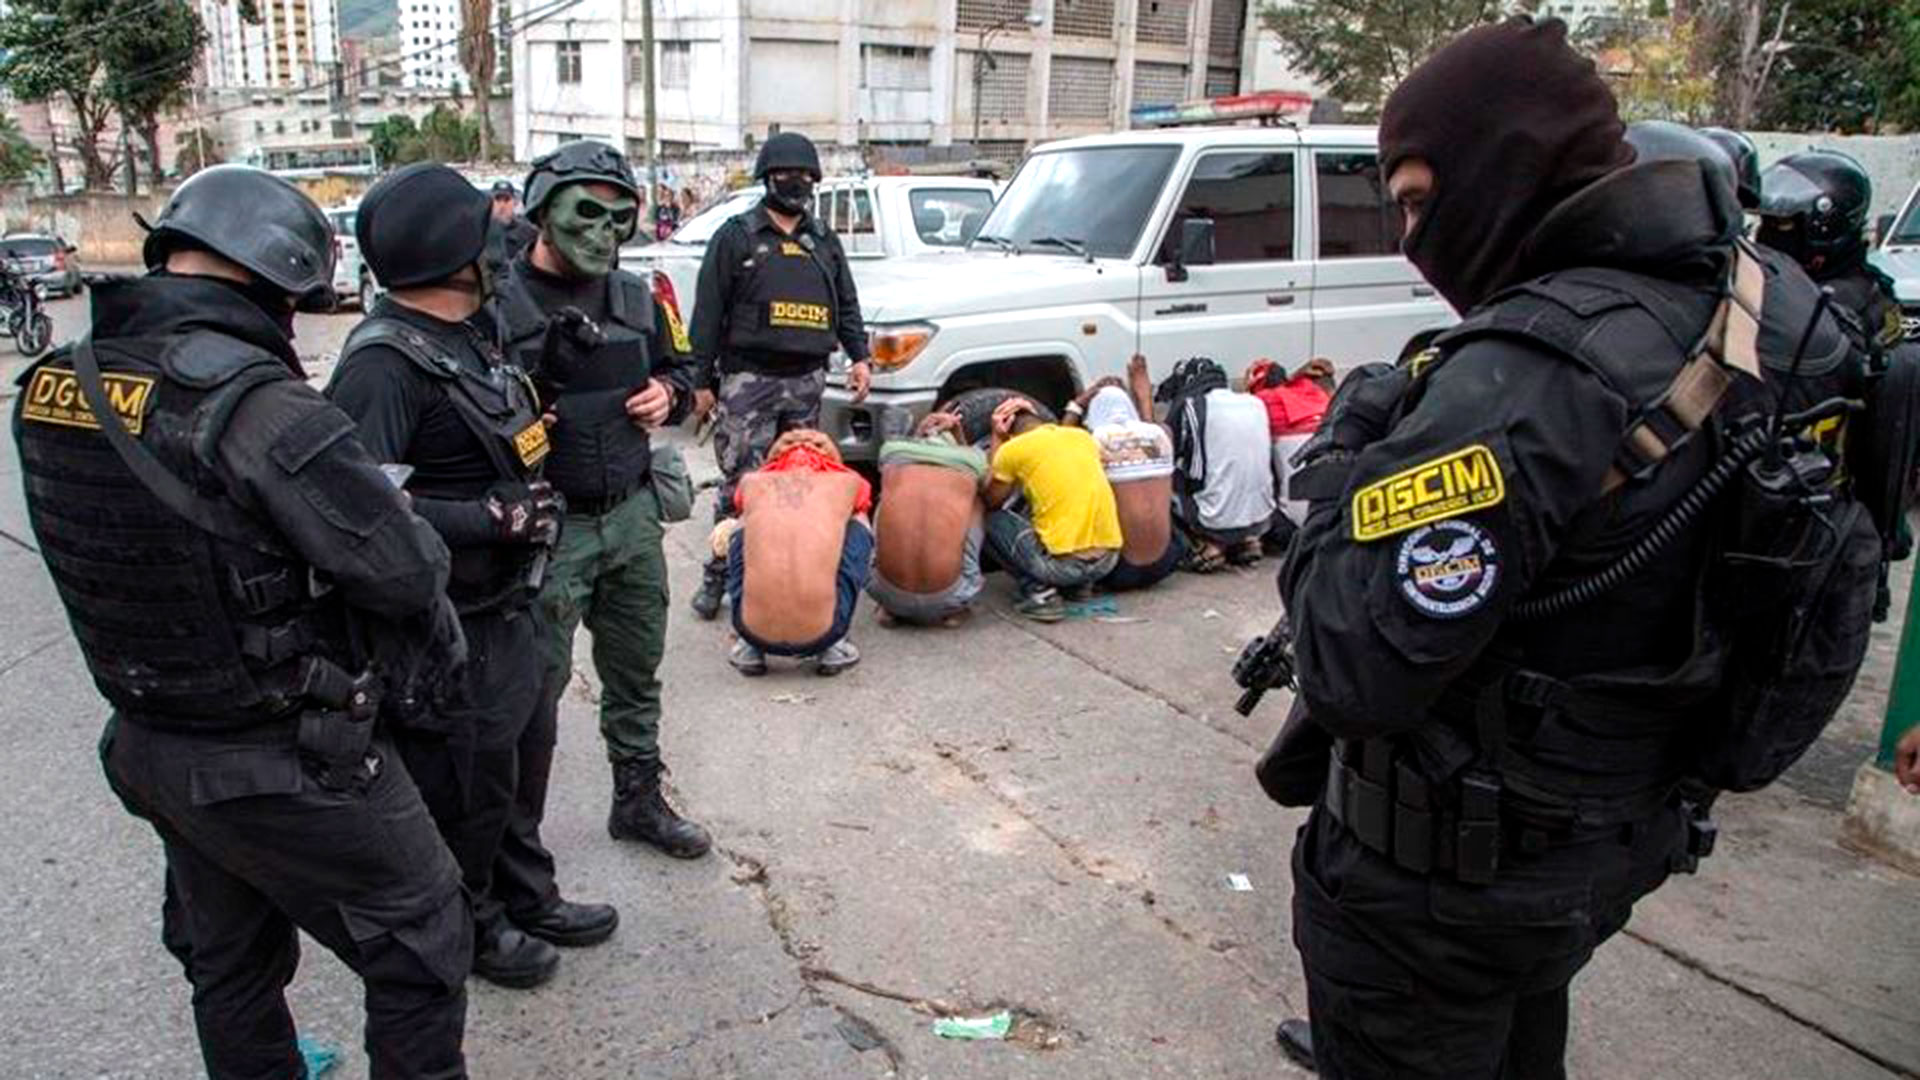 EEUU instó al régimen de Maduro a que libere a los activistas que denunciaron al chavismo: “Los ataques contra la sociedad civil deben terminar”